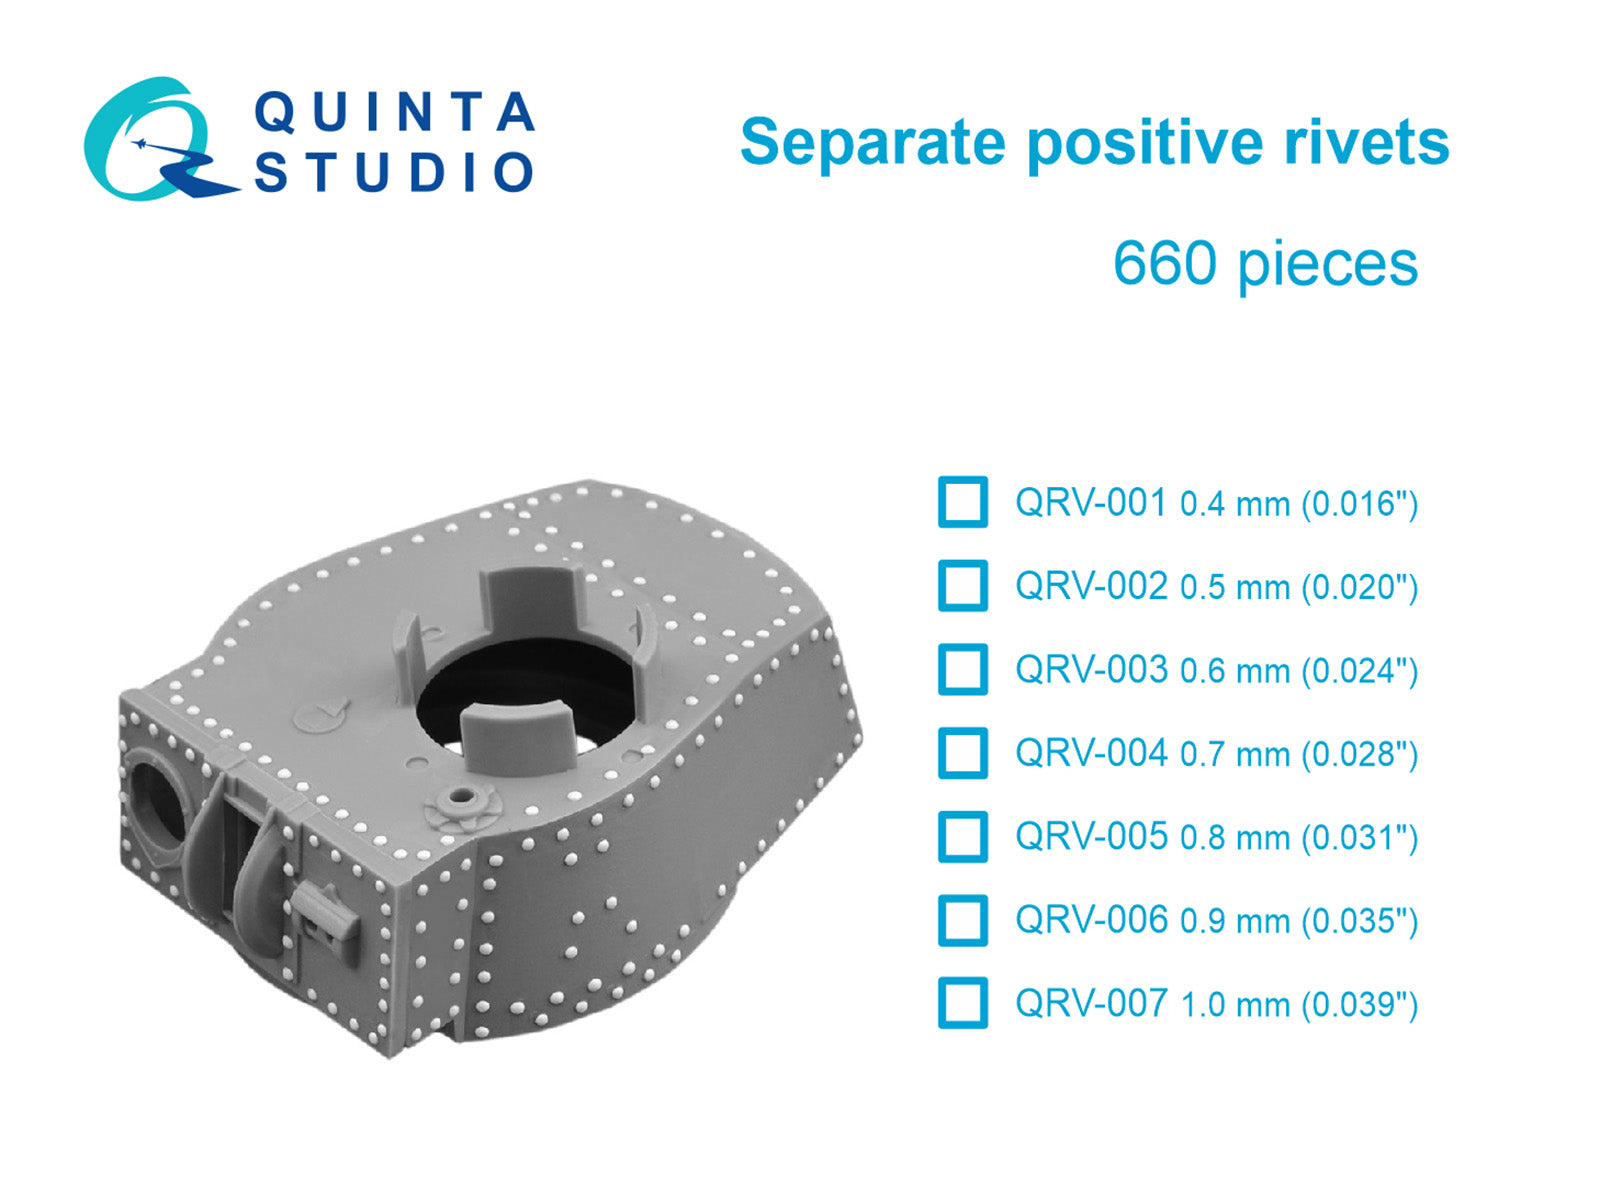 Quinta Studio - Separate positive rivets, 0.7mm (0.028") 660 pcs QRV-004